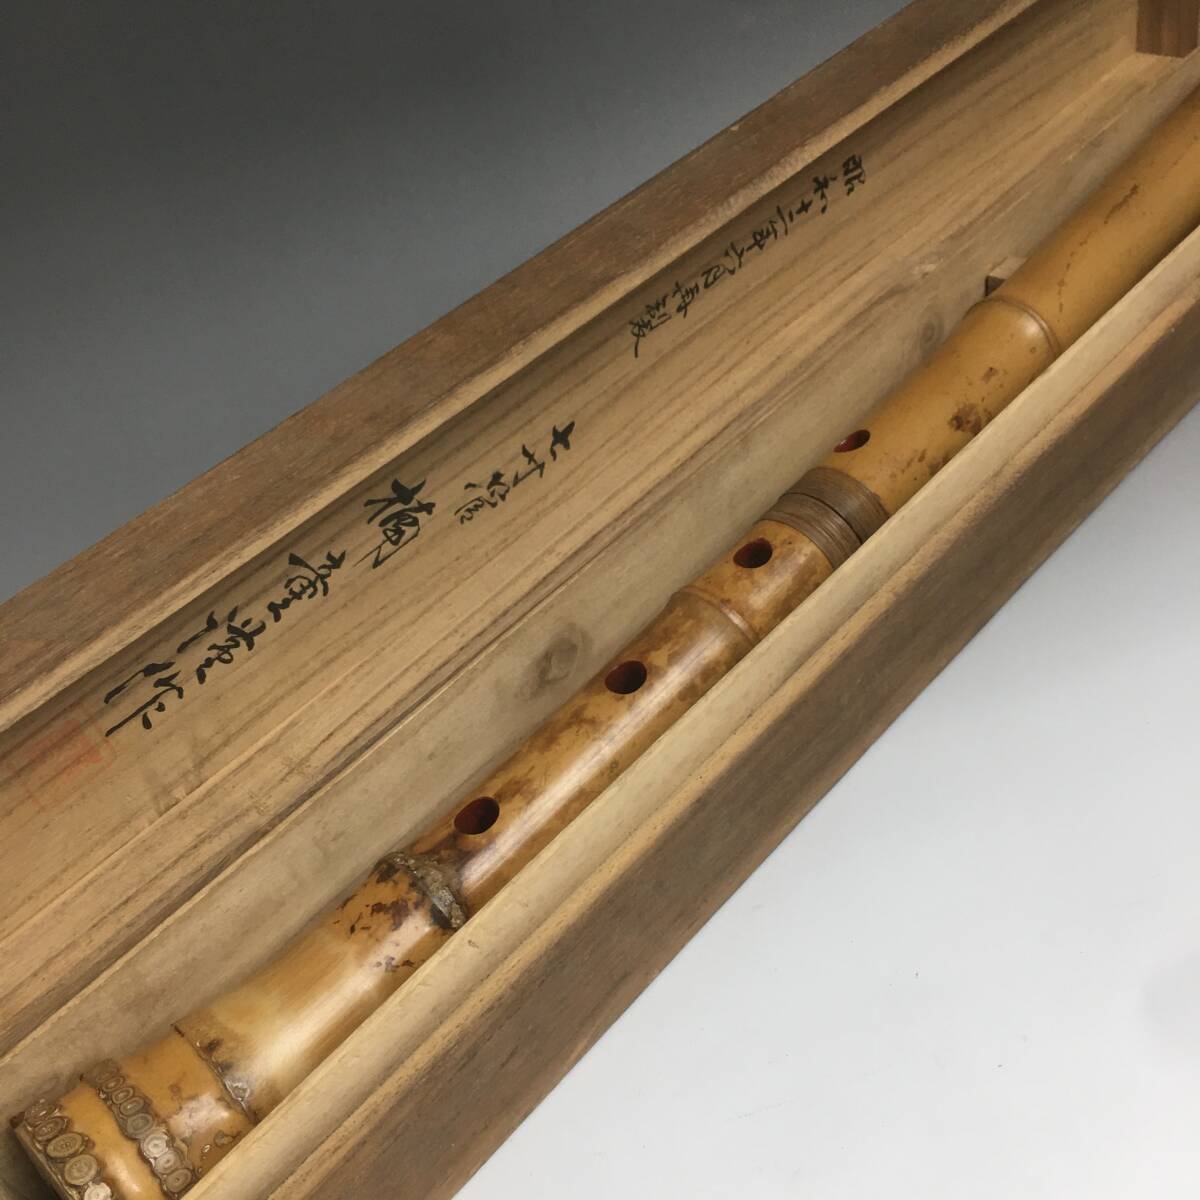 ut29/50 сякухати 0. Zaimei кото старый . общая длина примерно 51.5cm Zaimei длина дудка бамбук труба традиционные японские музыкальные инструменты бамбук производства 2 печать трансляция .2 разделение возможно текущее состояние товар * Junk 